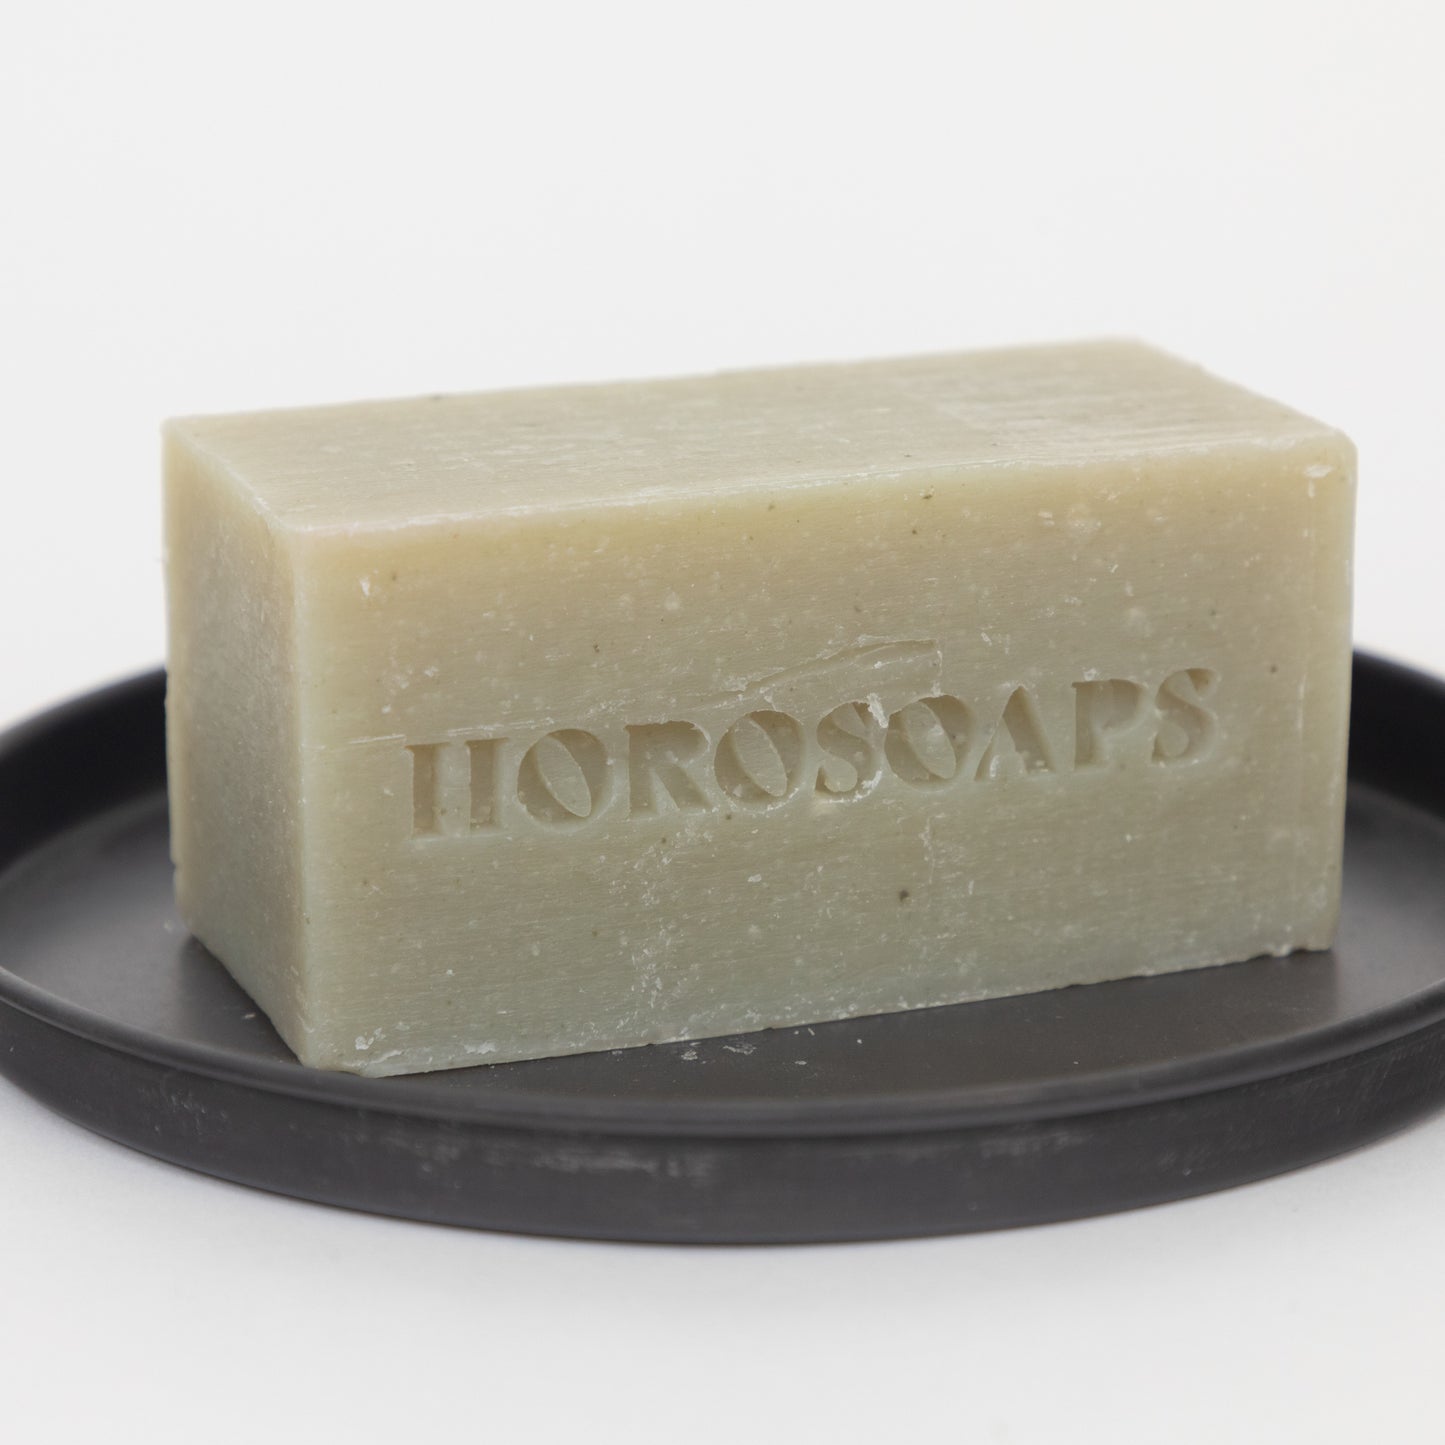 HOROSOAPS Taurus Soap Bar